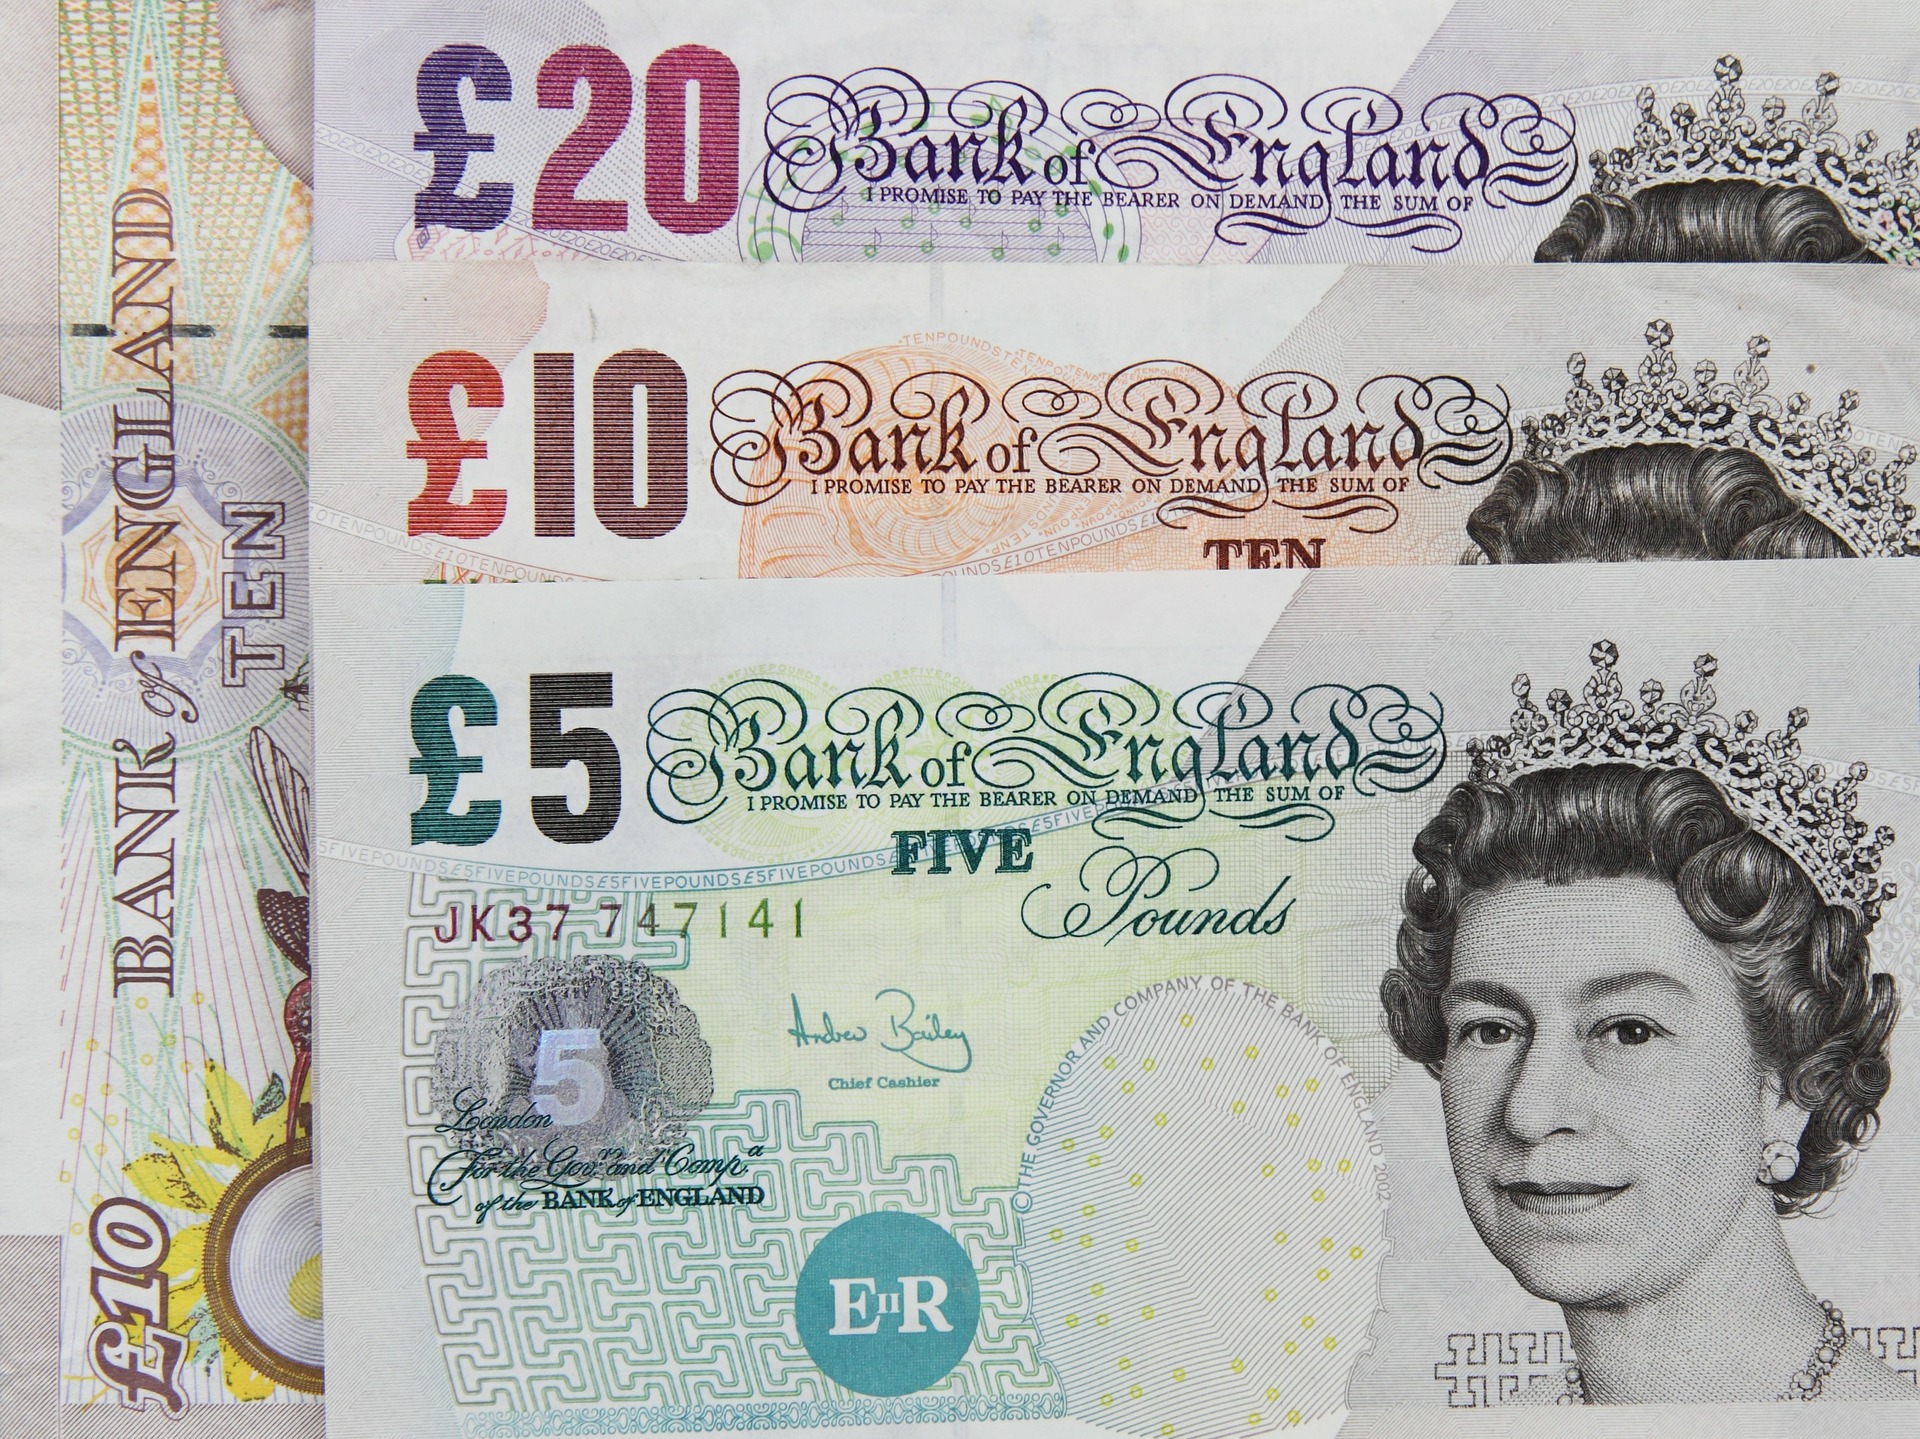 La libra esterlina bajó  0.5% frente al dólar y el euro en el mercado de Londres. (Foto Prensa Libre: pixabay)